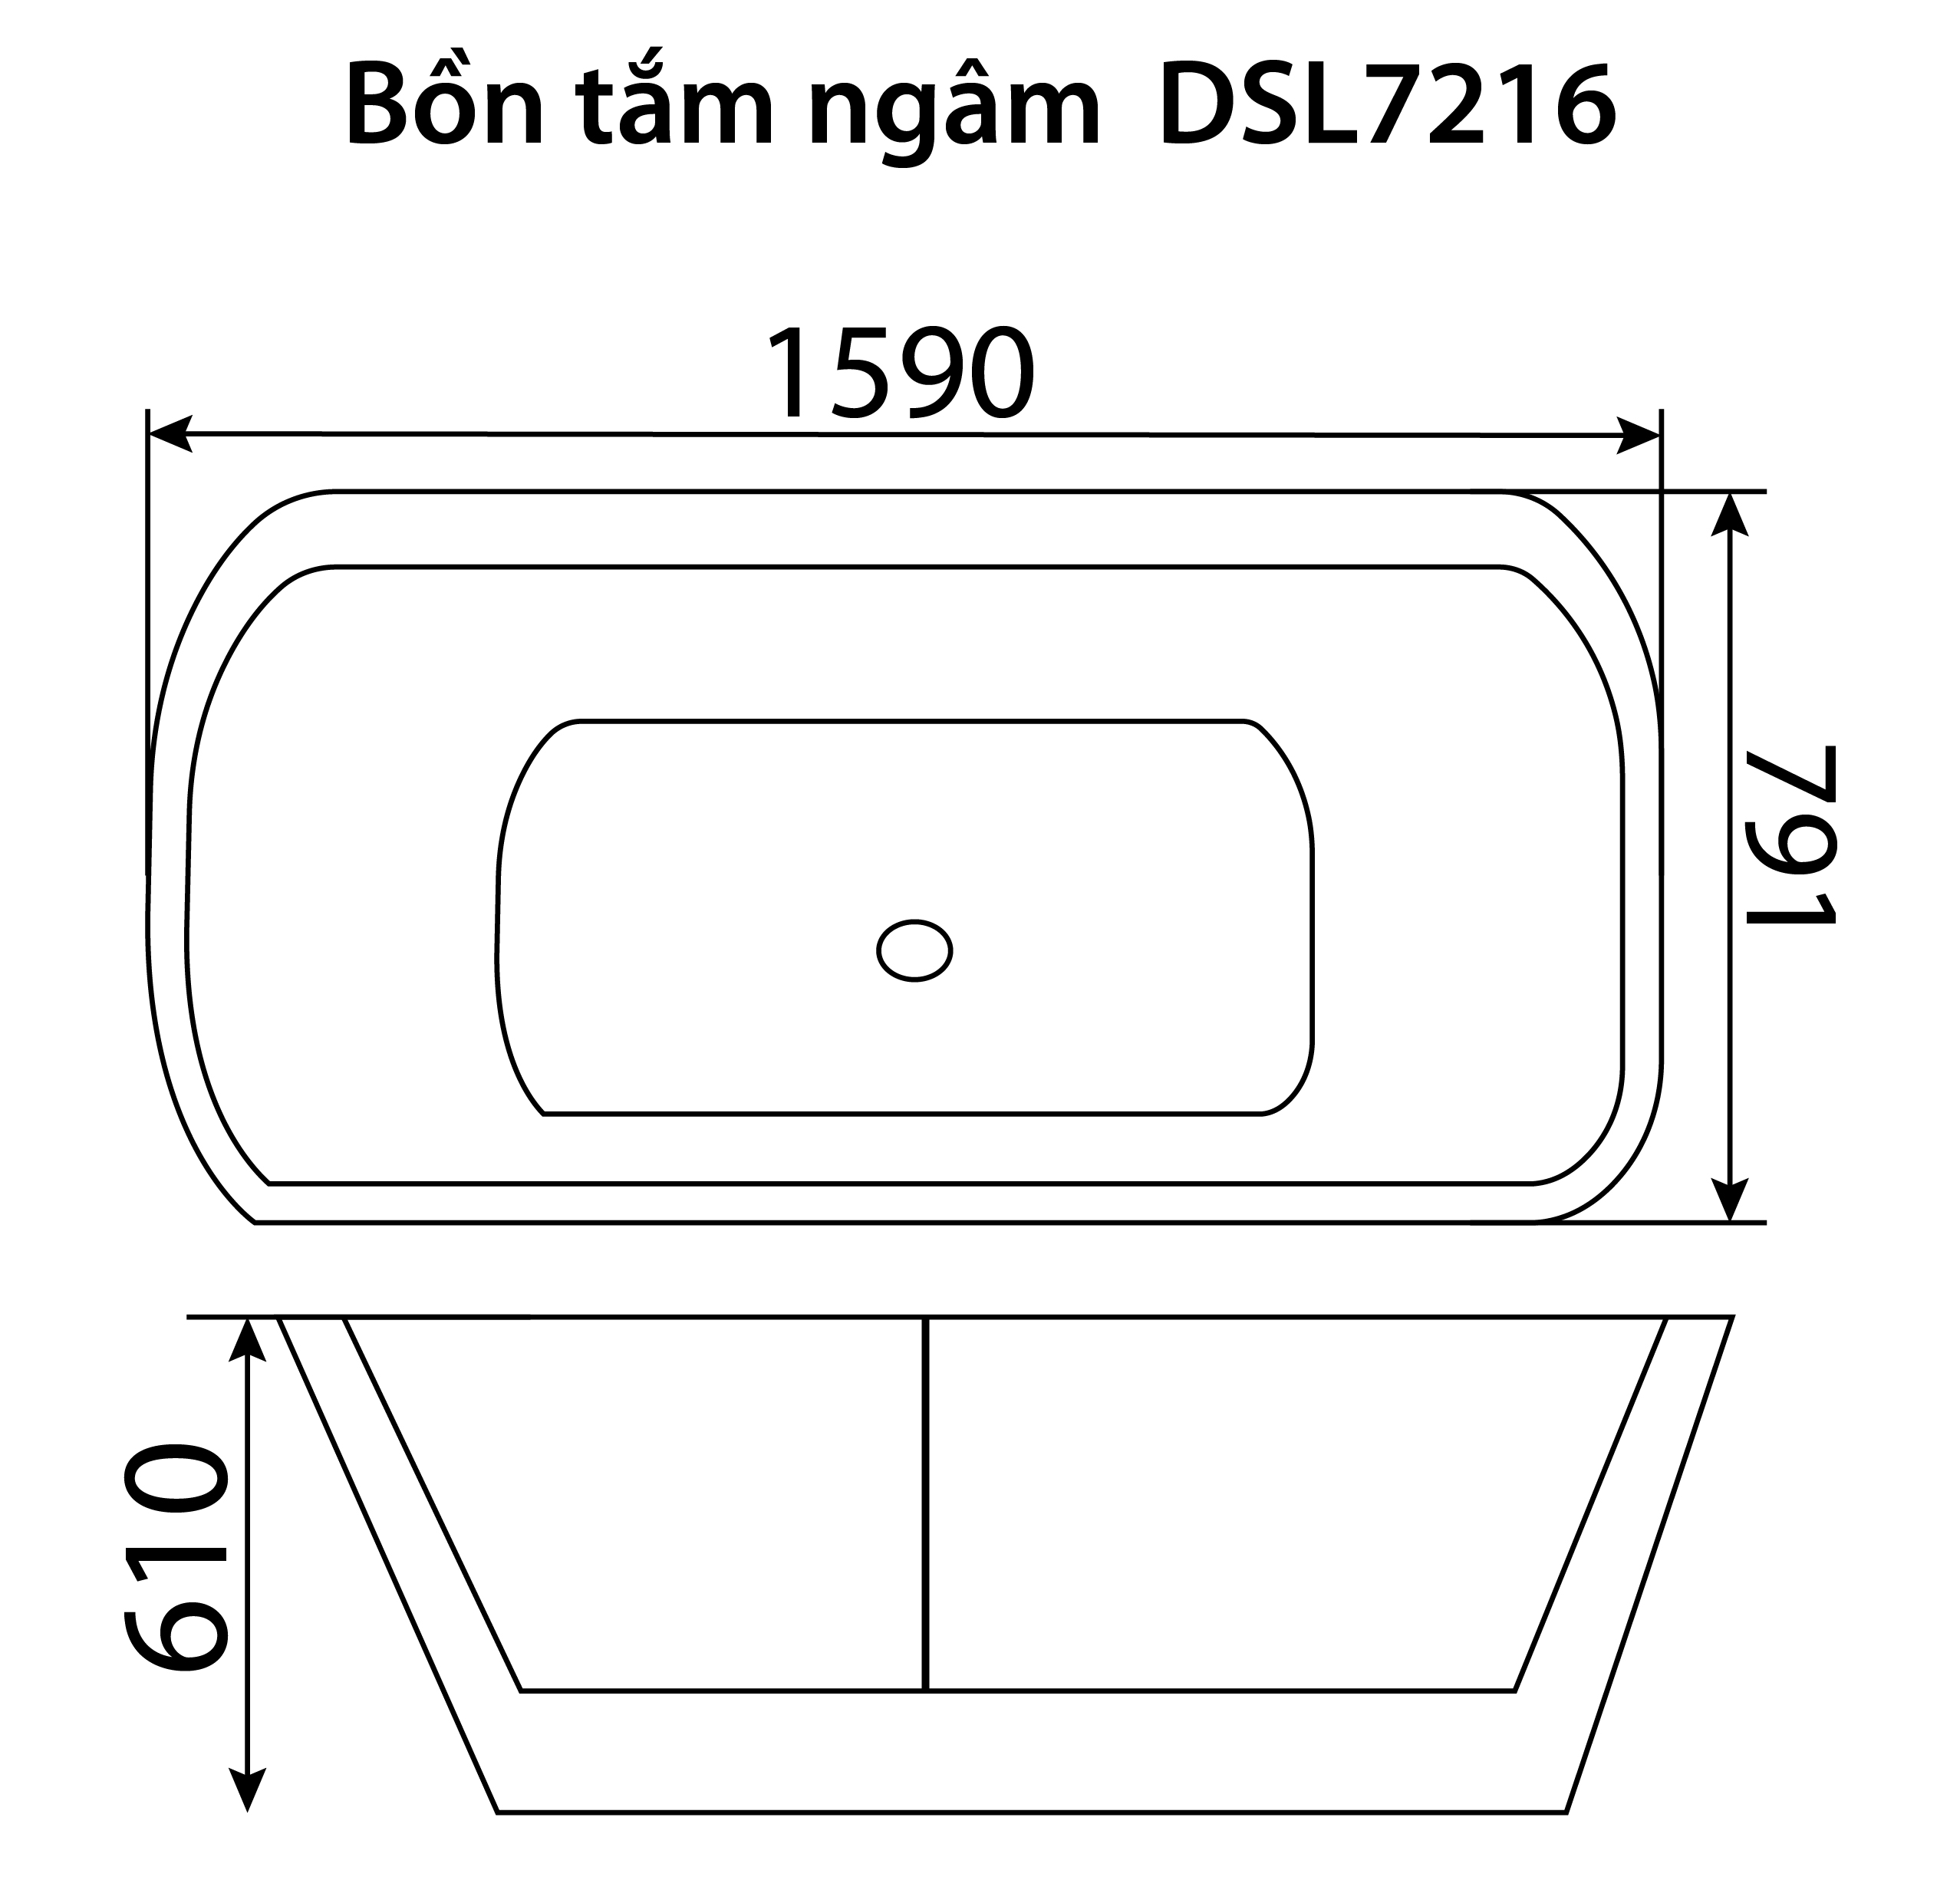 Bon Tam Ngam DSL7216